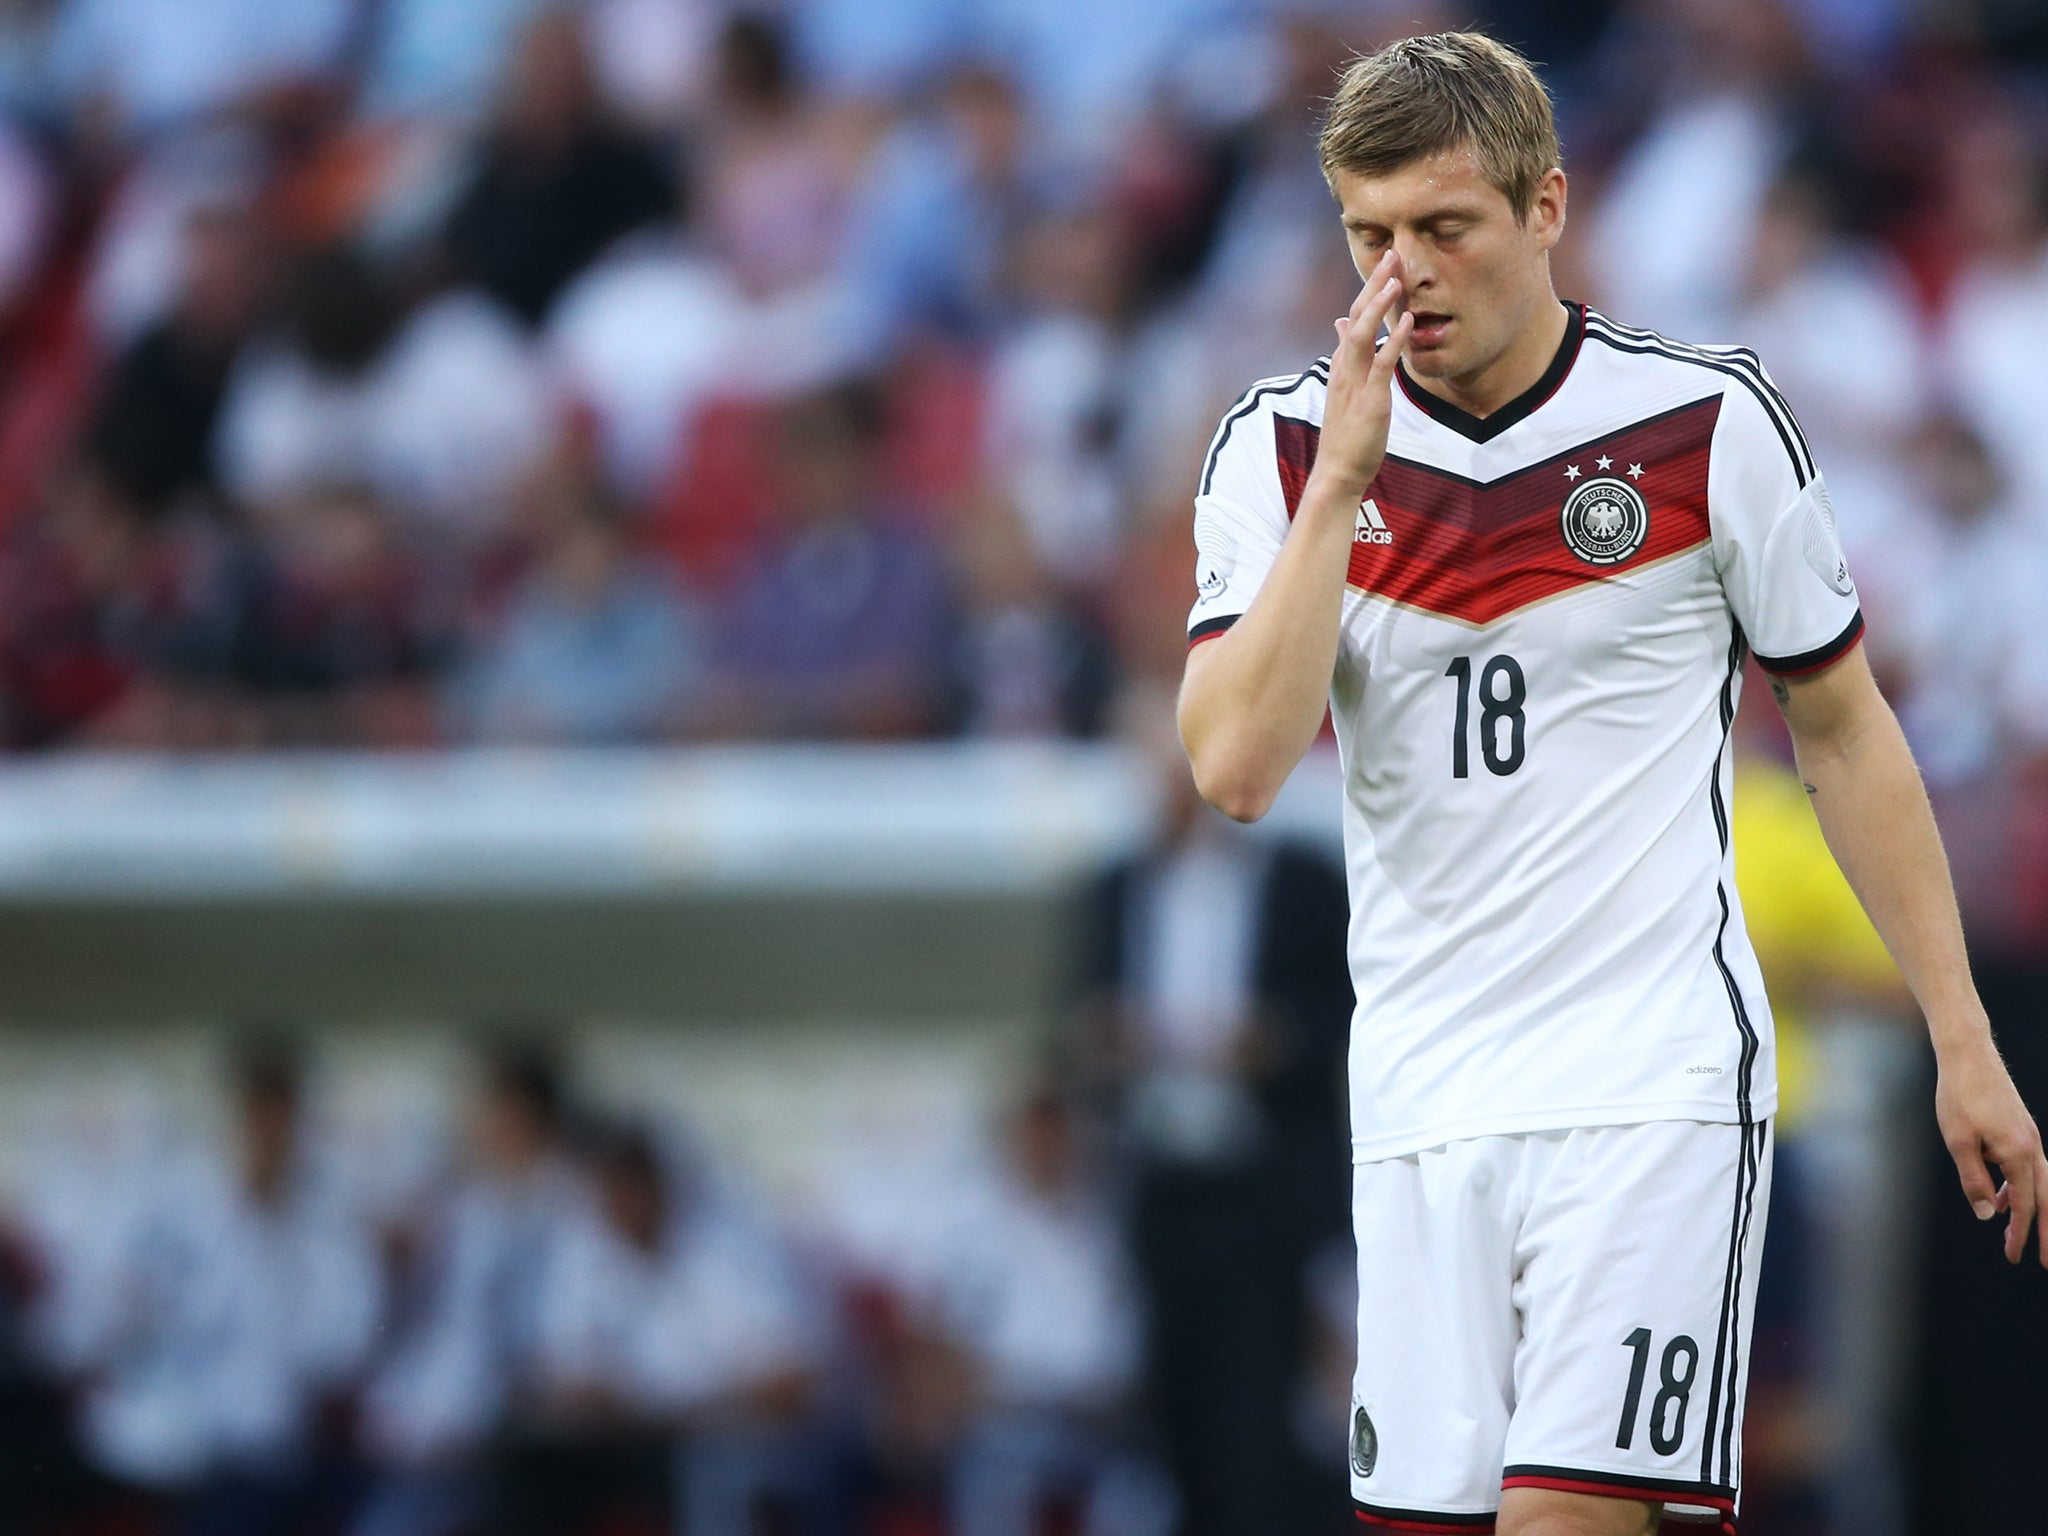 Toni Kroos of Germany and Bayern Munich